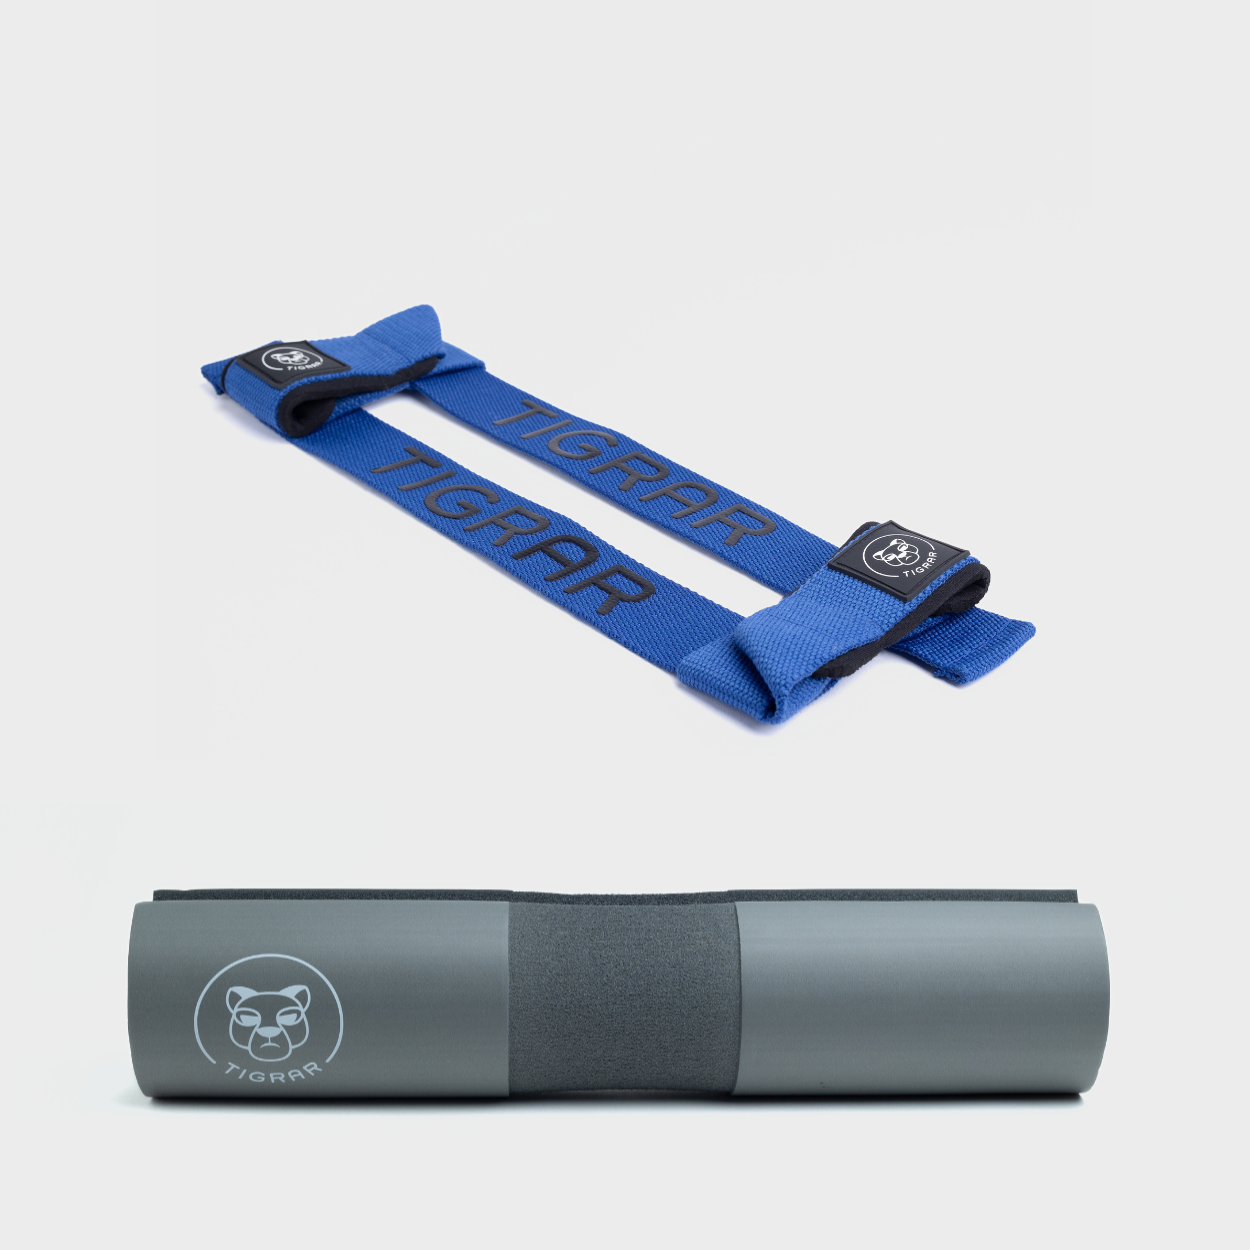 Blauwe Tigrar lifting straps en grijze barbell pad, beide ontworpen voor grip en comfort, ideaal voor deadlifts.